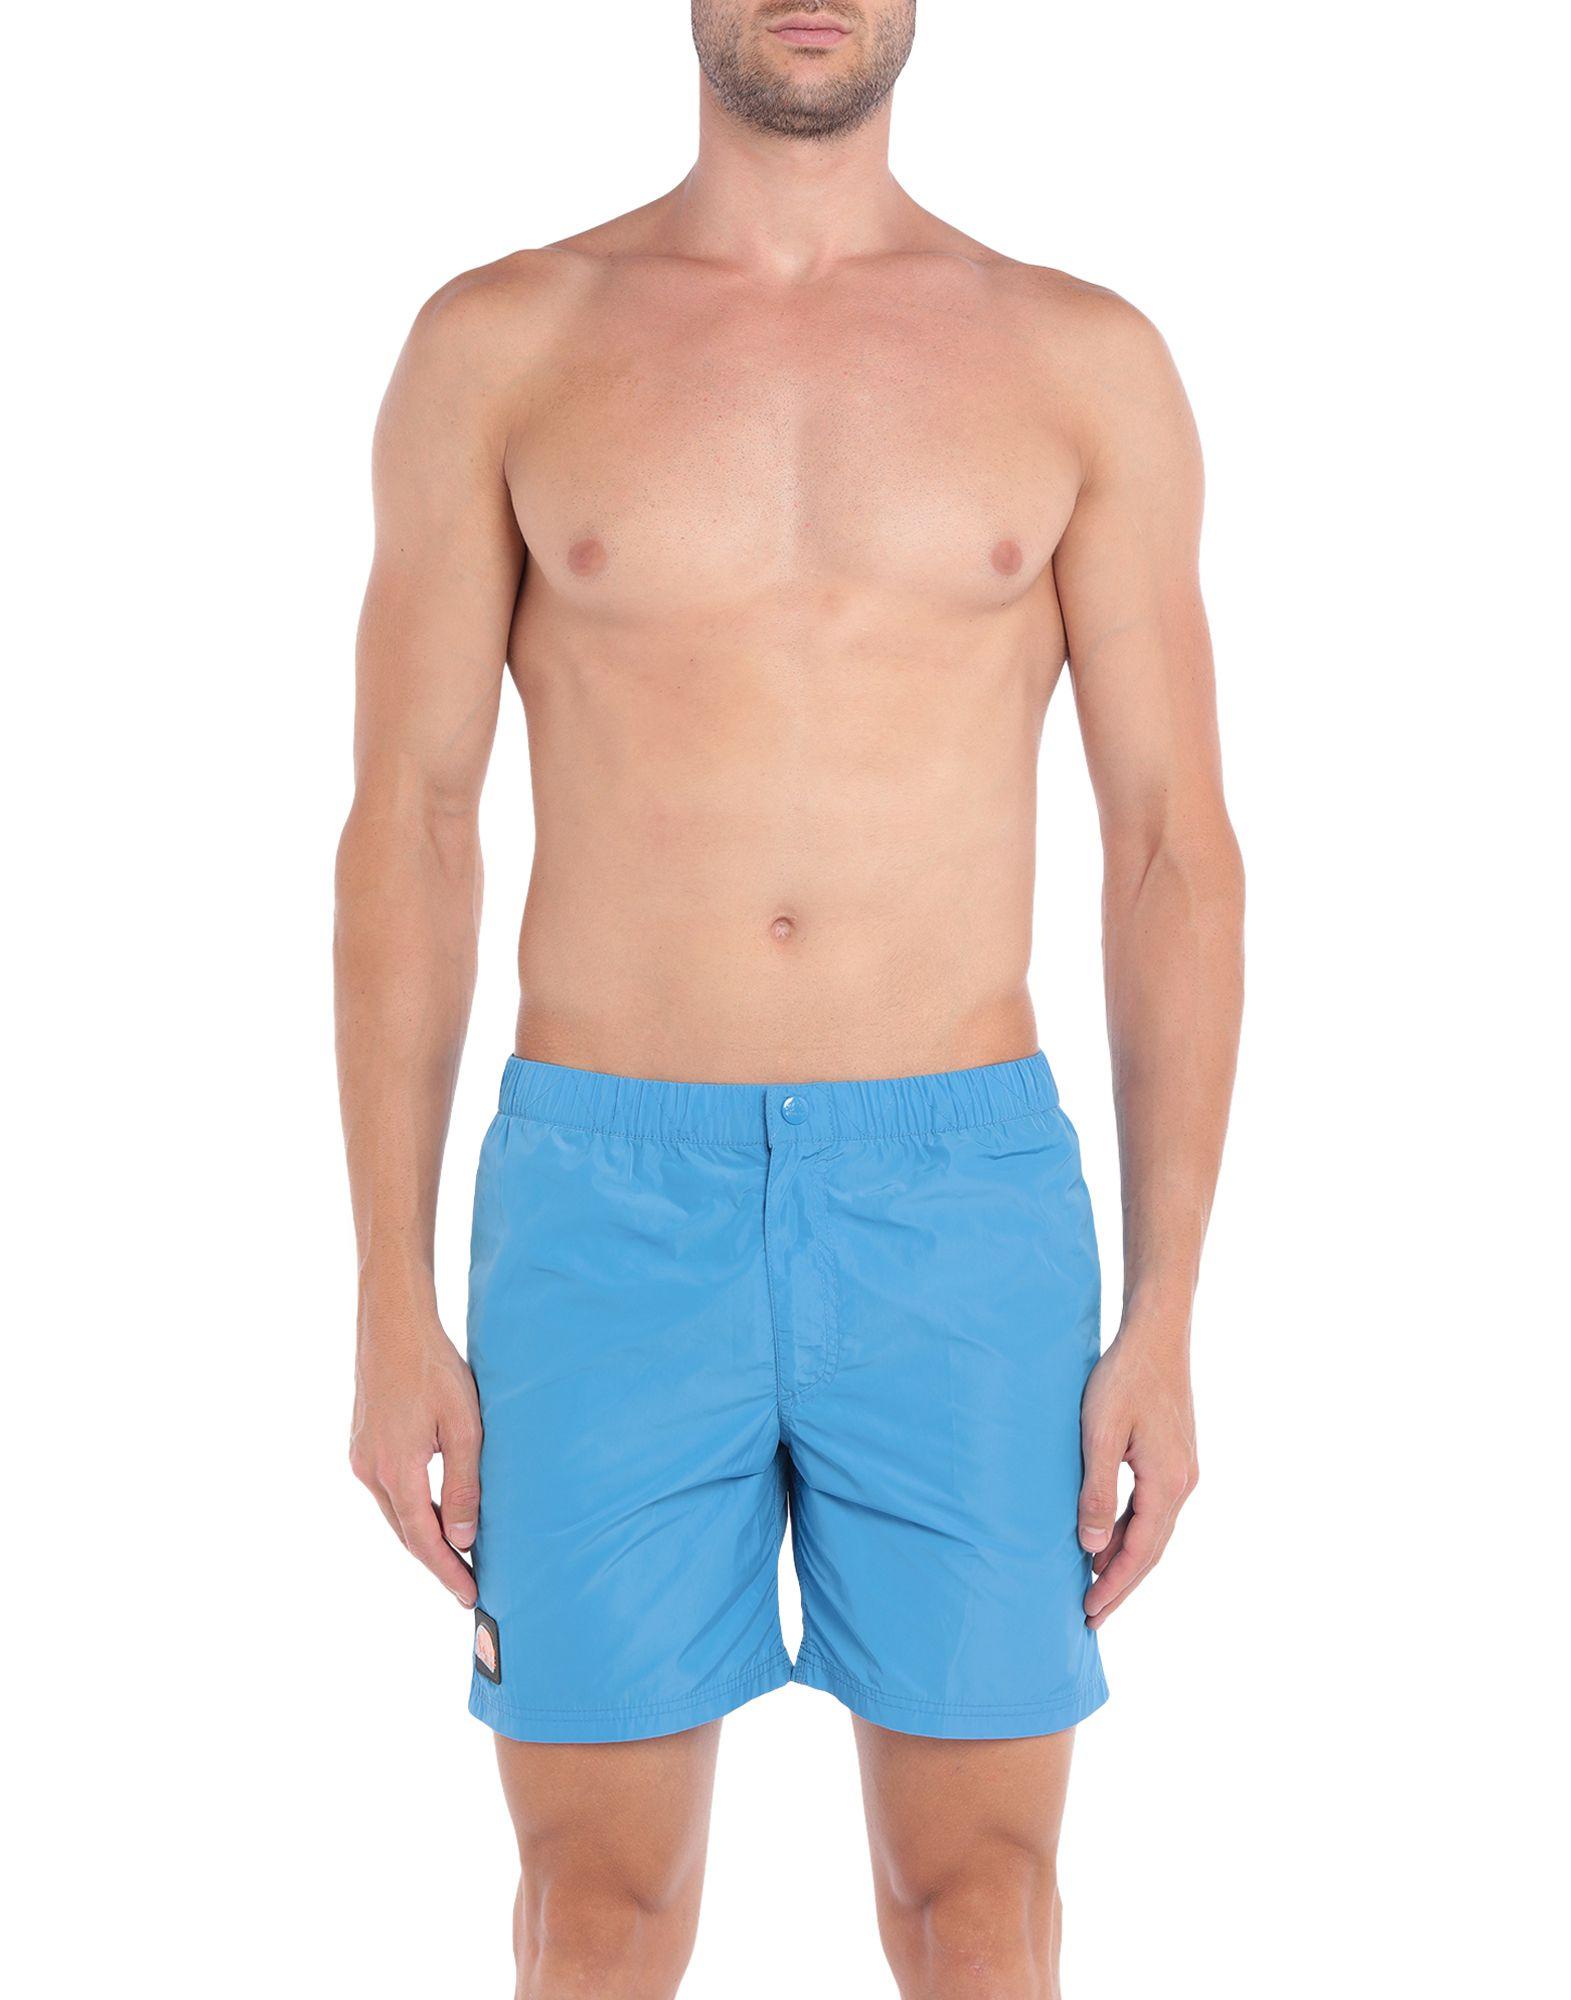 Sundek Synthetic Swim Trunks in Pastel Blue (Blue) for Men - Lyst